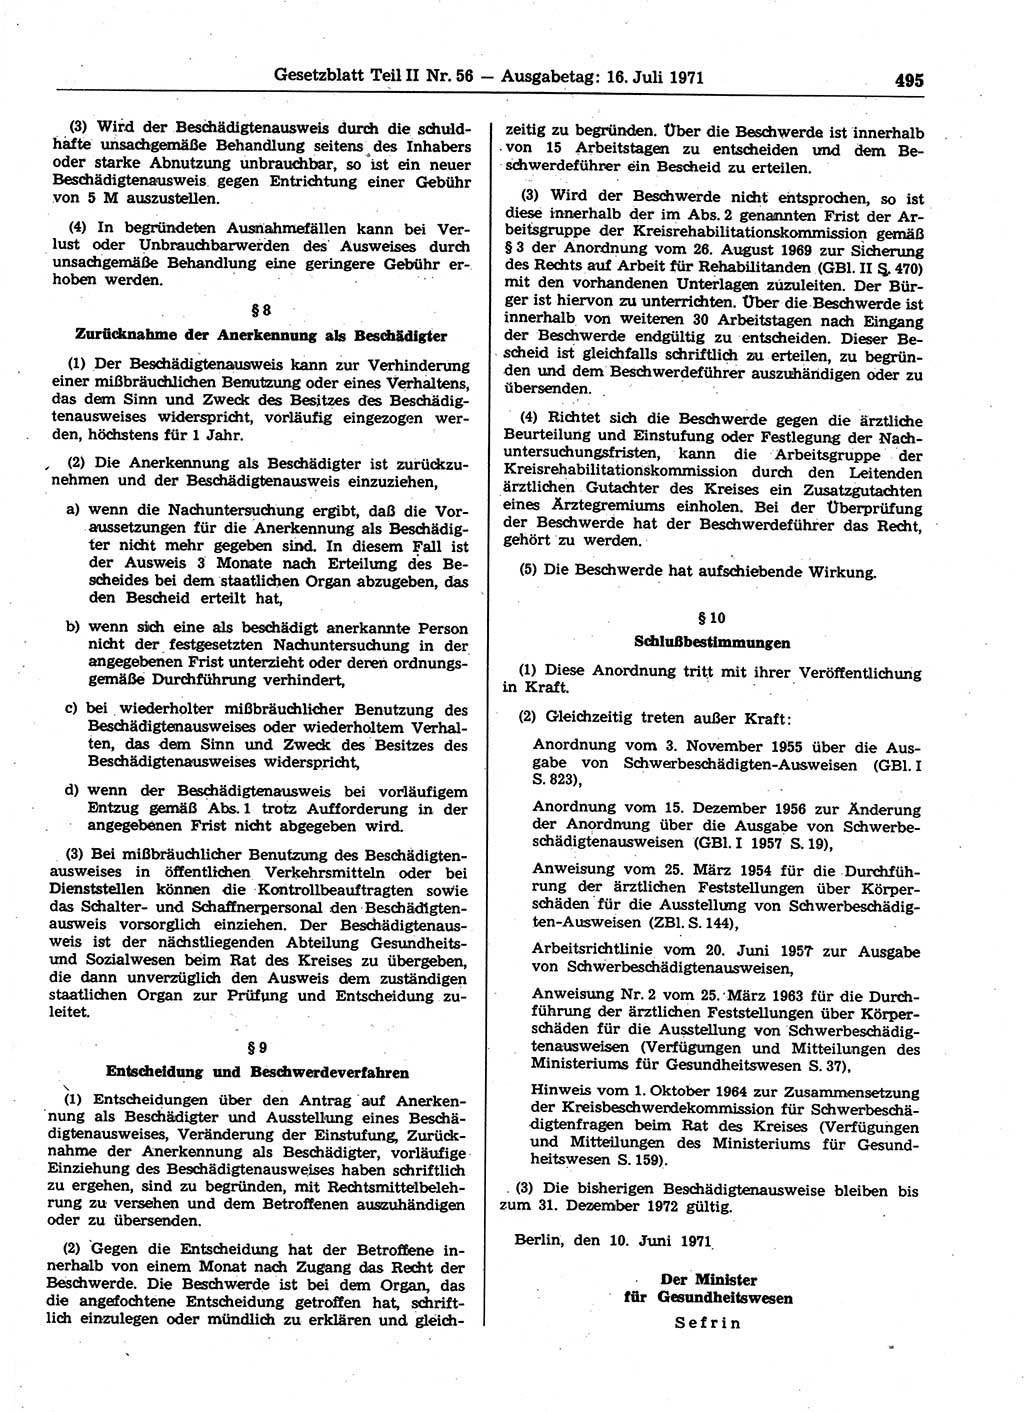 Gesetzblatt (GBl.) der Deutschen Demokratischen Republik (DDR) Teil ⅠⅠ 1971, Seite 495 (GBl. DDR ⅠⅠ 1971, S. 495)